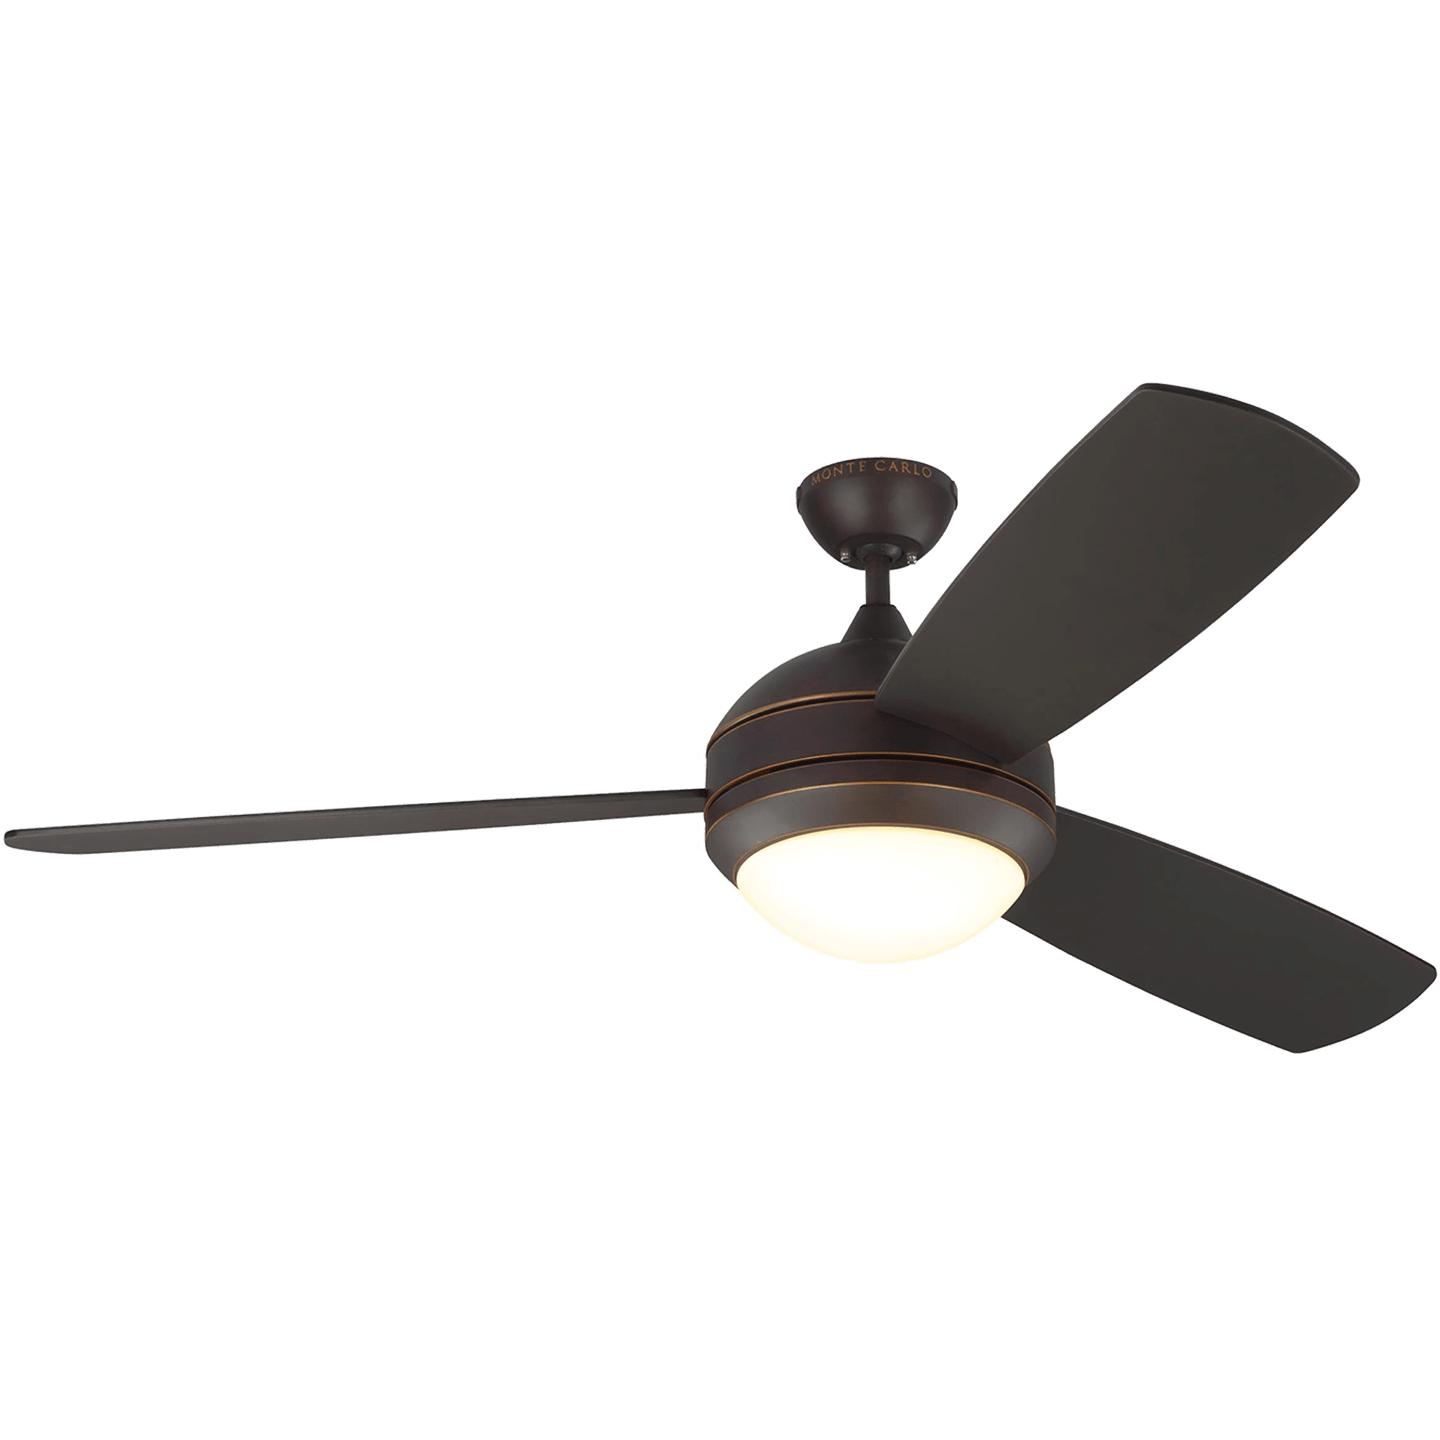 Купить Потолочный вентилятор Discus Trio 58" LED Ceiling Fan в интернет-магазине roooms.ru